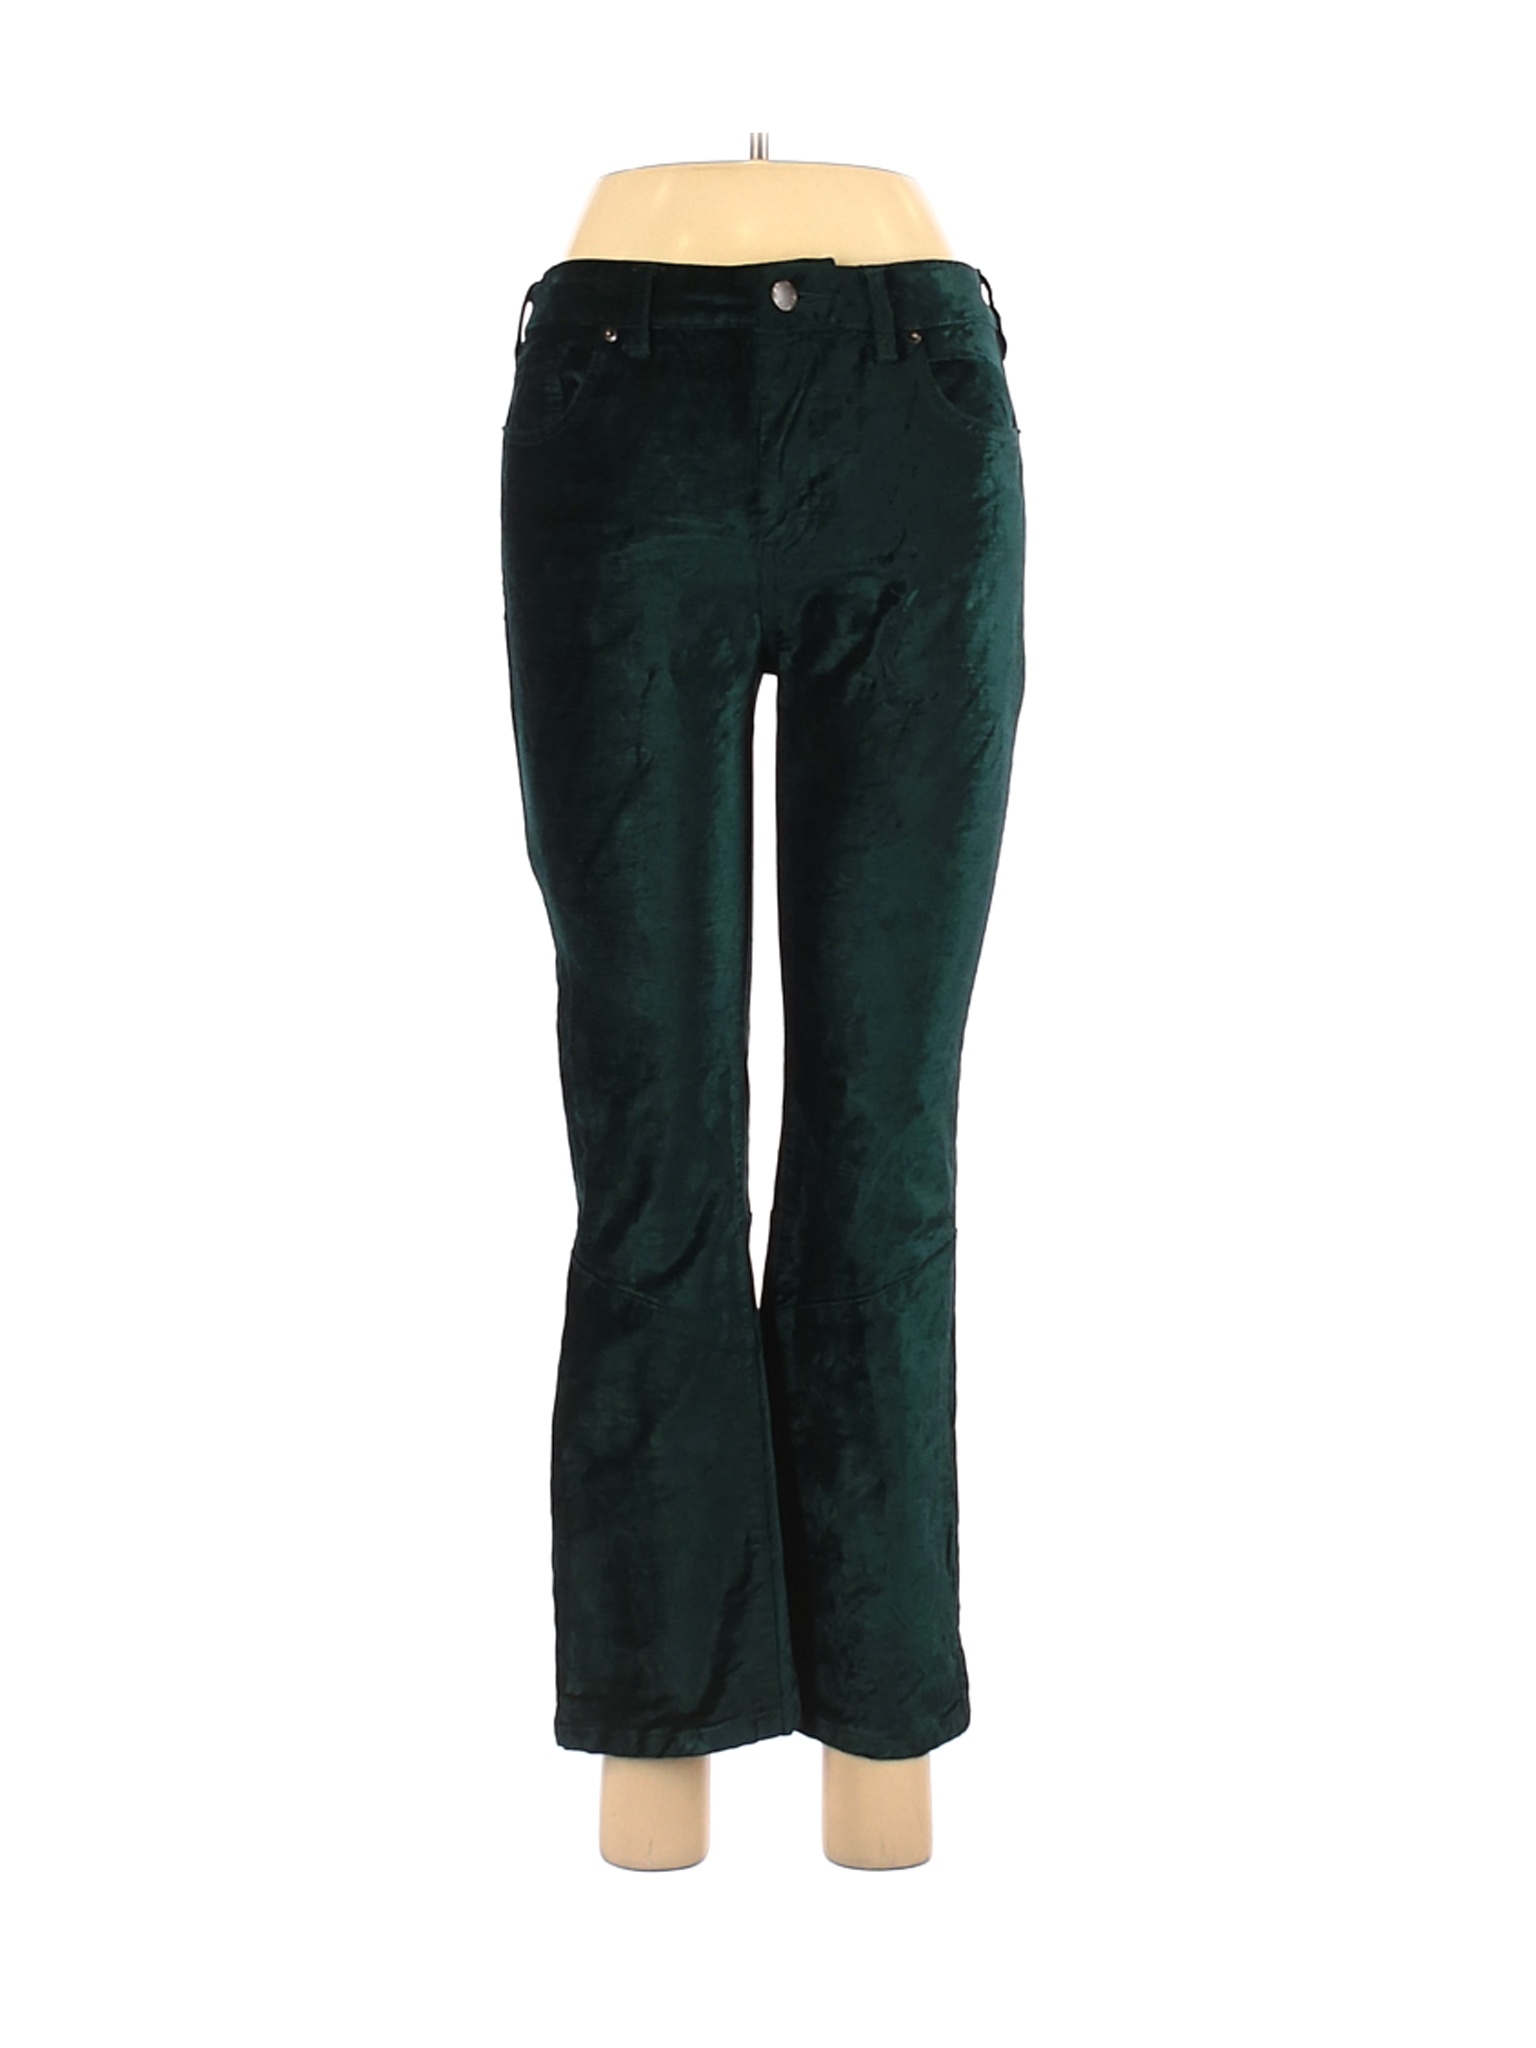 Free People Women Green Casual Pants 28W | eBay